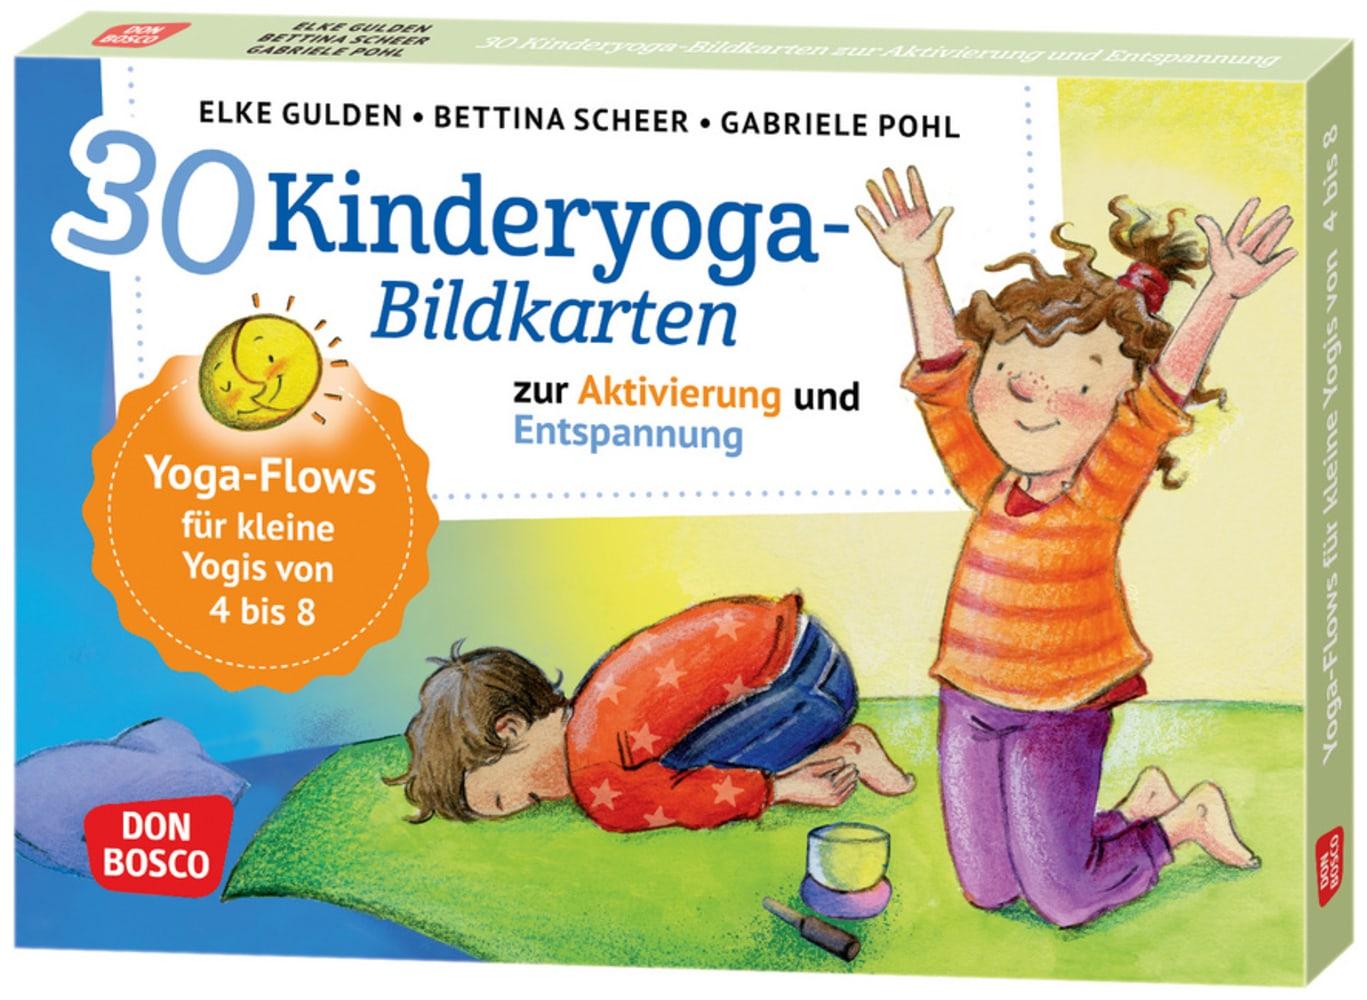 Játék 30 Kinderyoga-Bildkarten zur Aktivierung und Entspannung Elke Gulden